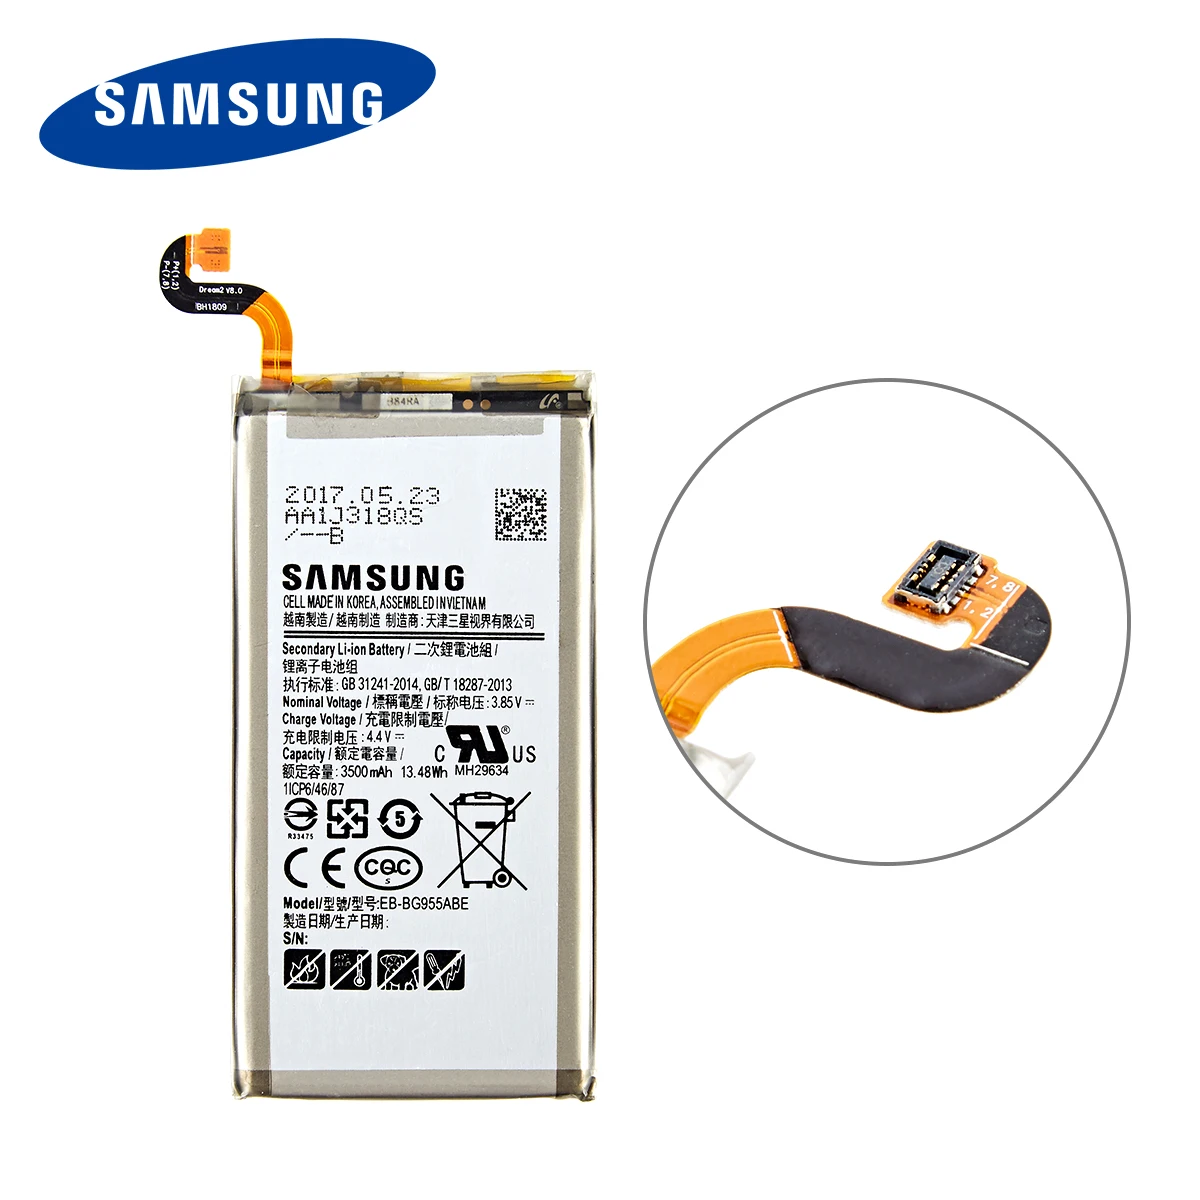 SAMSUNG Originalus EB-BG955ABA EB-BG955ABE 3500mAh Baterija Samsung Galaxy S8 Plus+ G9550 G955 G955F/A G955T G955S G955P +Įrankiai